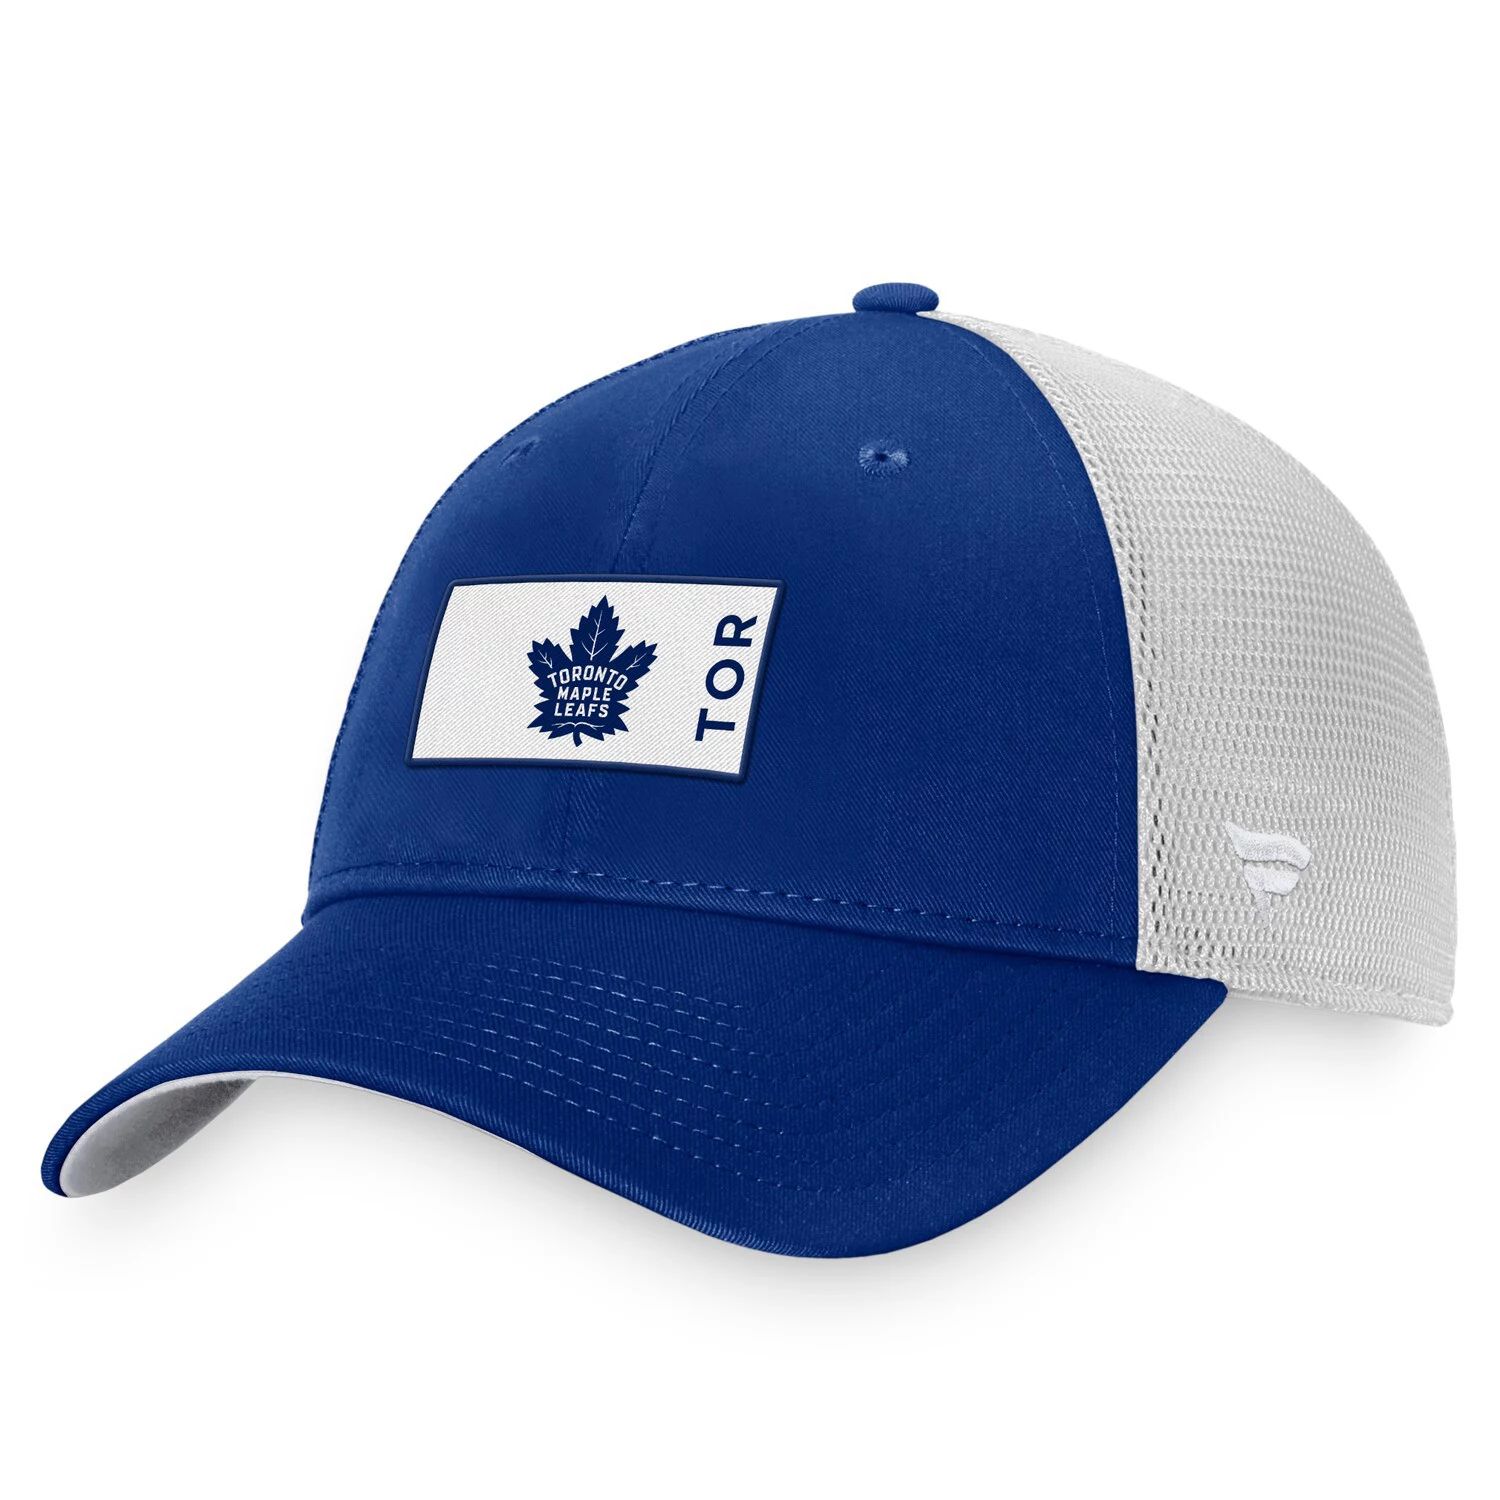 цена Мужская синяя фирменная кепка Fanatics Toronto Maple Leafs Authentic Pro Rink Trucker Snapback